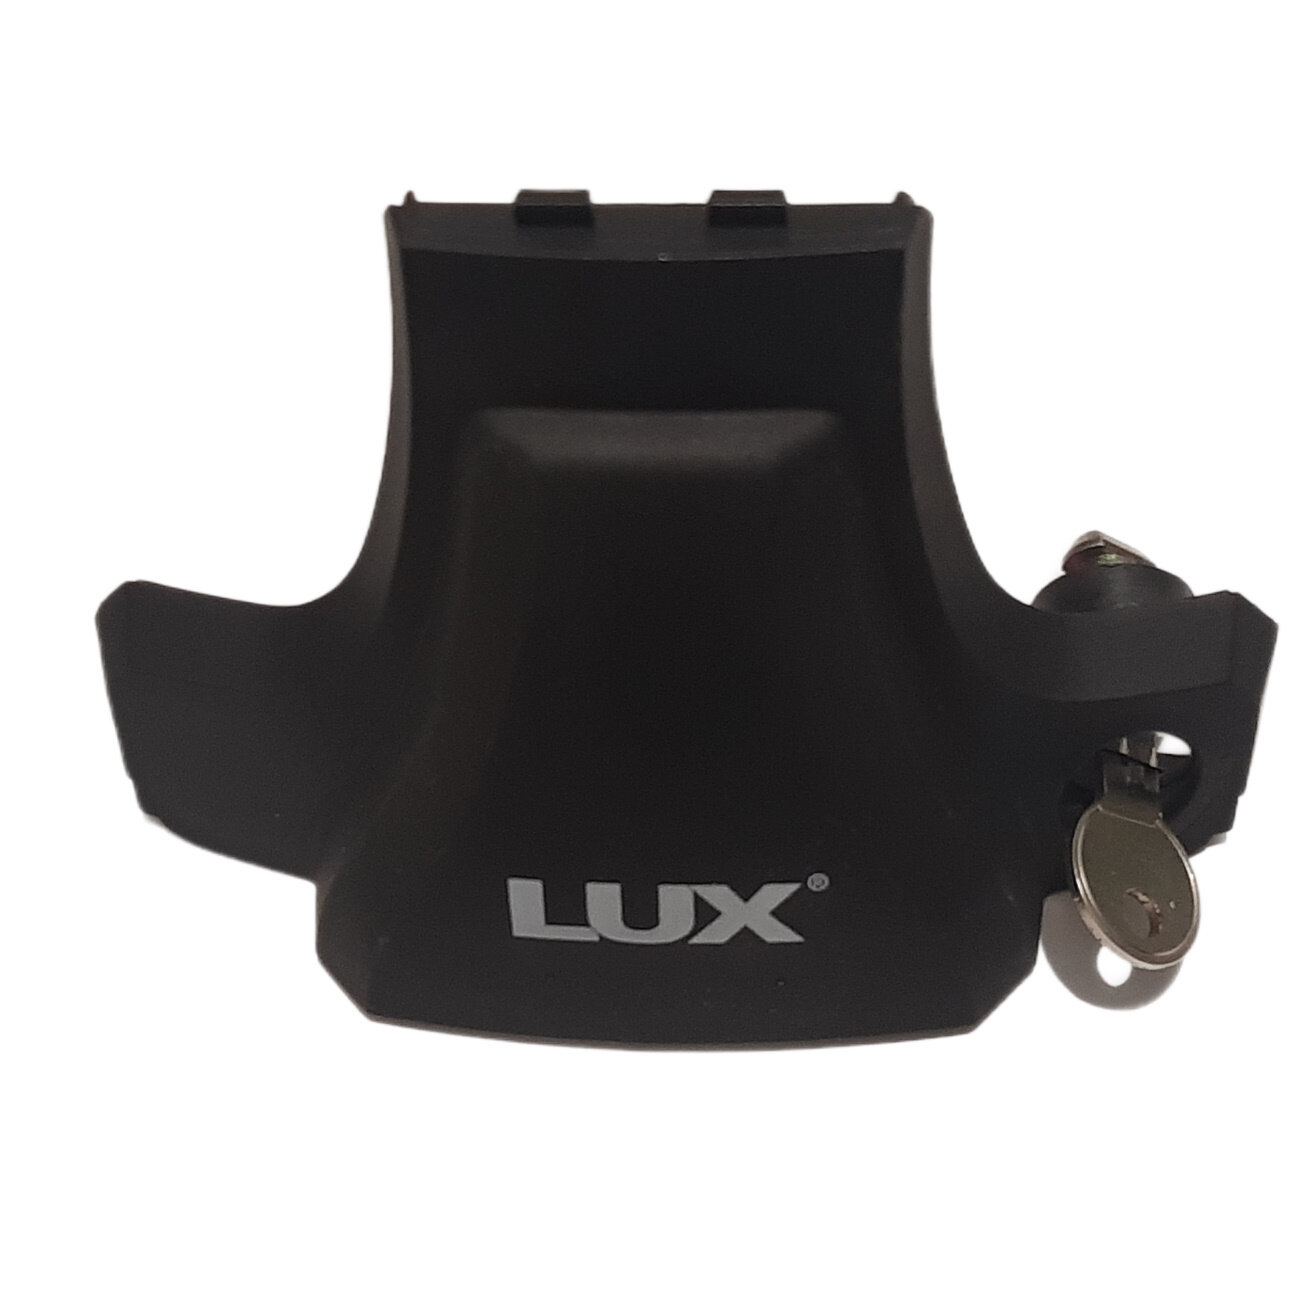 Крышка опоры багажной системы D-Lux 12 передняя с замком (1шт)